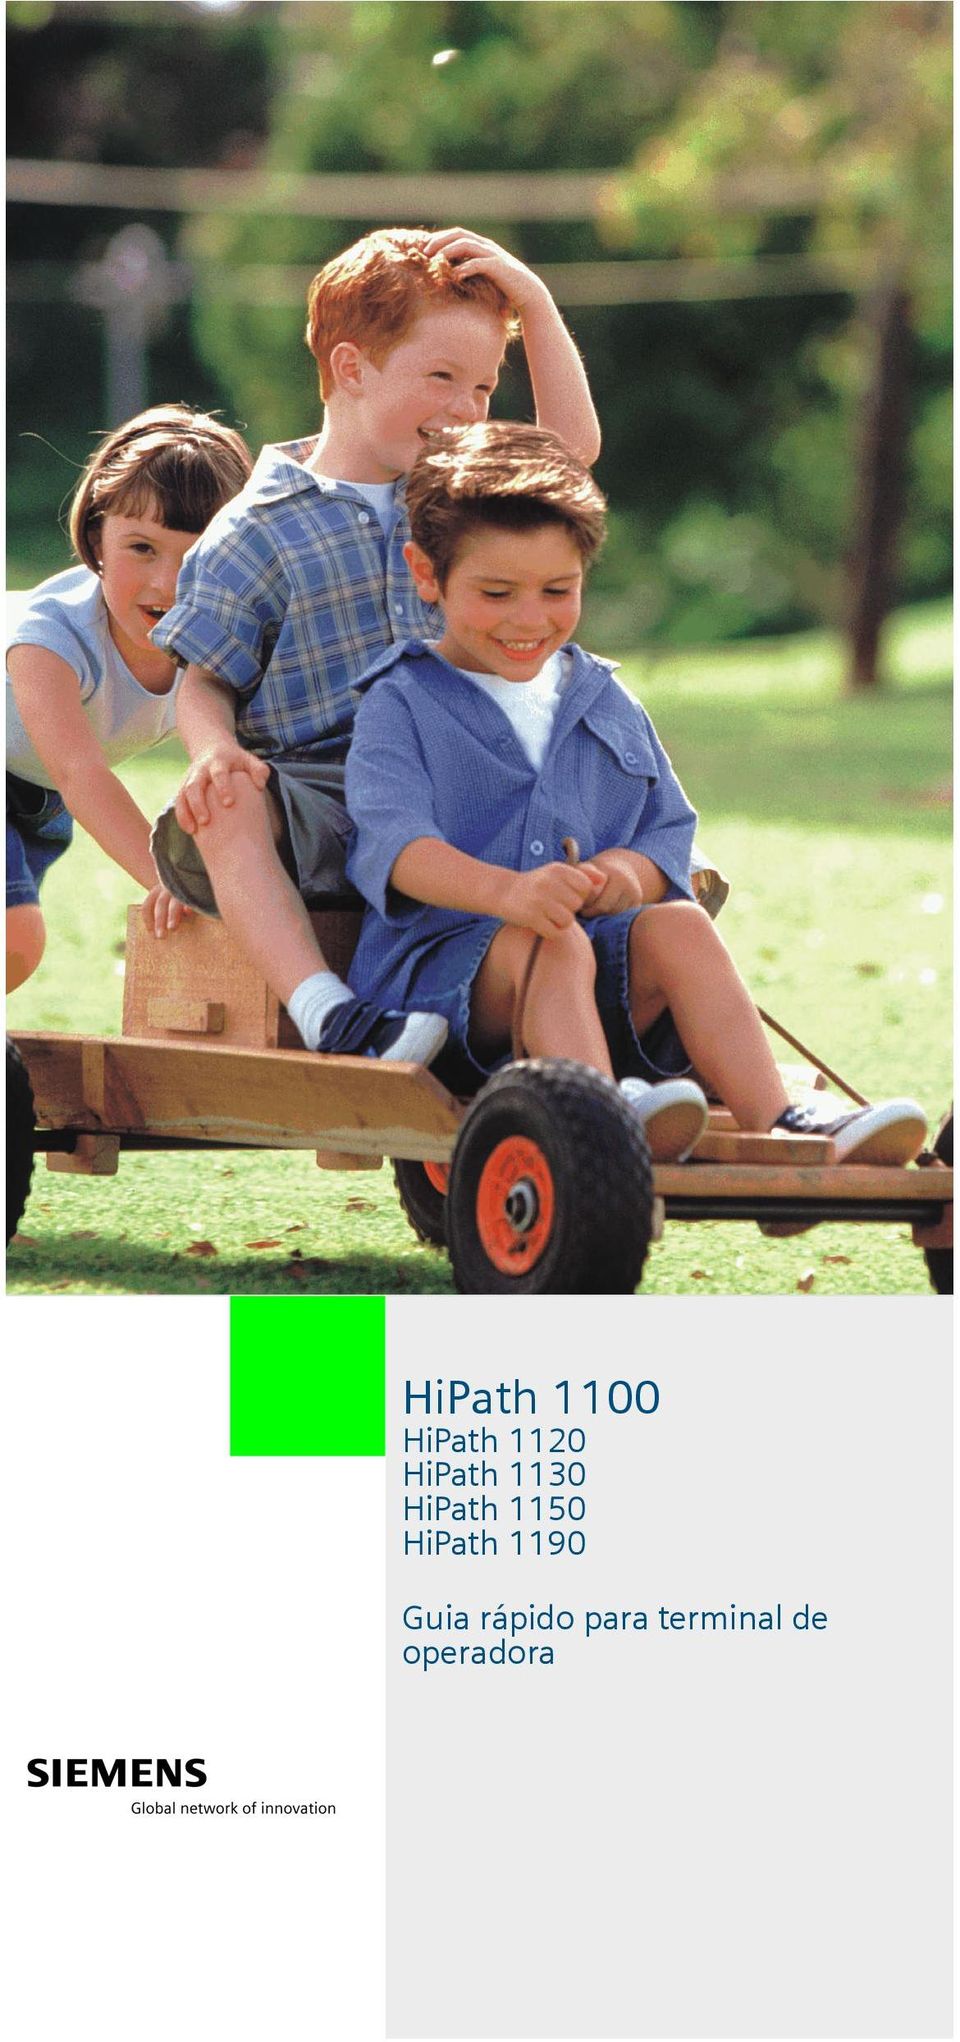 HiPath 1190 Guia rápido